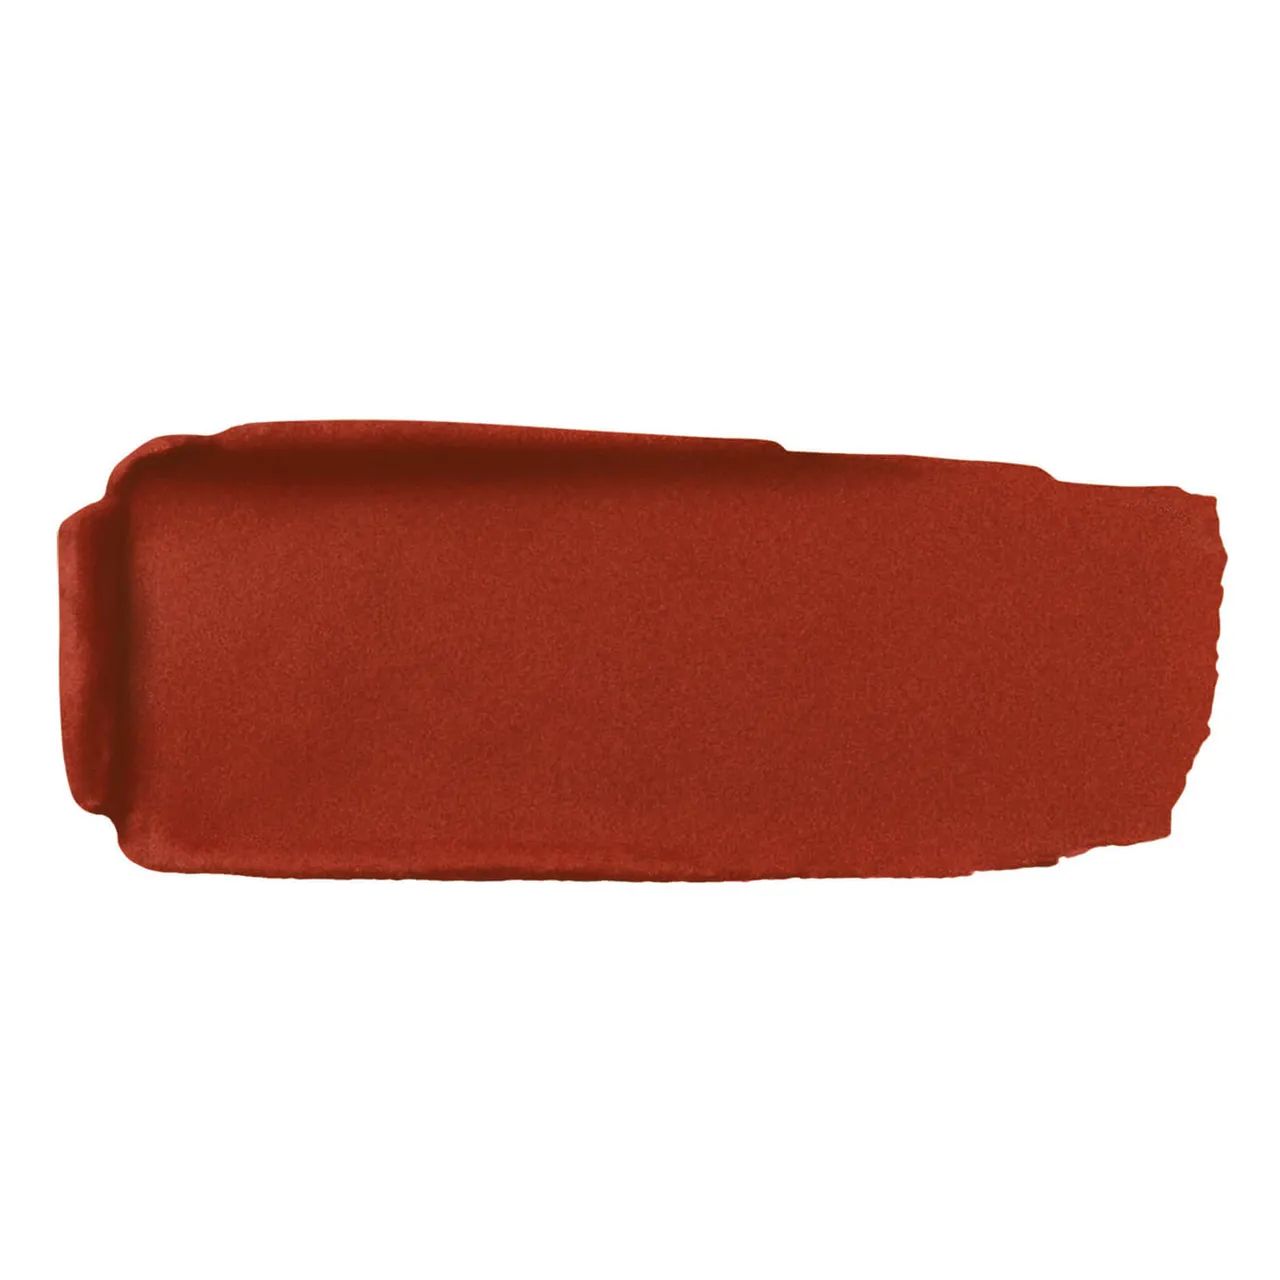 Guerlain Rouge G Luxurious Velvet 16 Hour Wear High-Pigmentation Velvet Matte Lipstick 3.5g (Various Shades) - 555 Brick Red